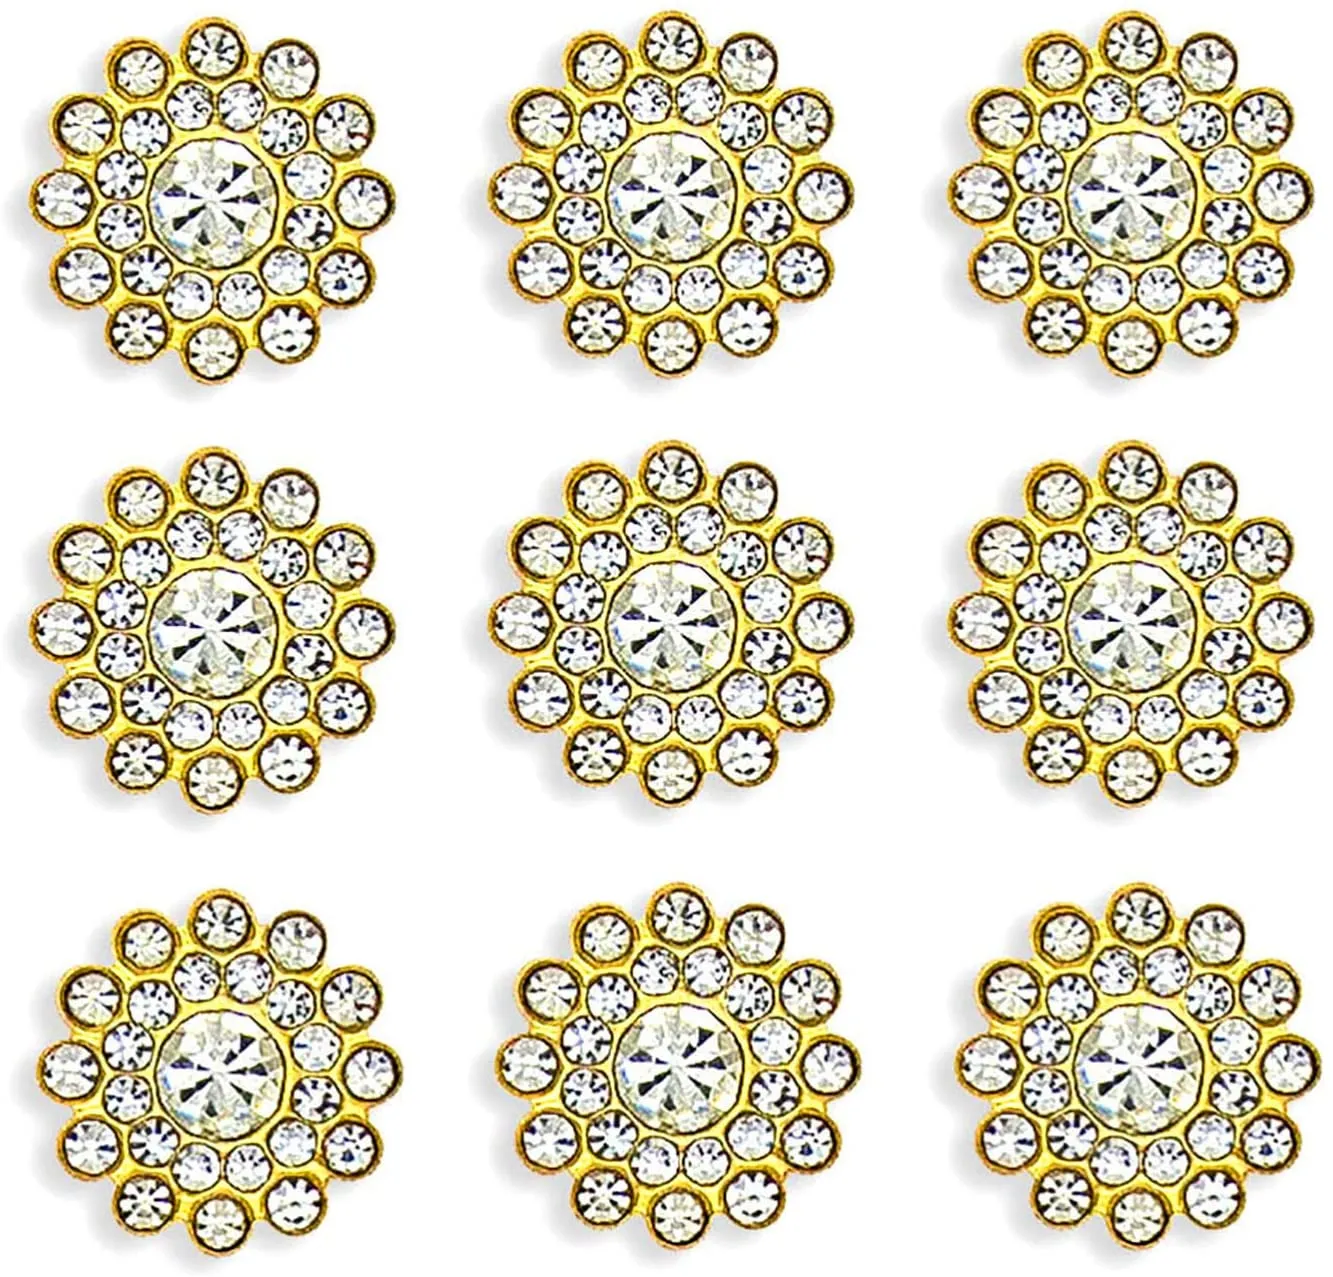 Strass Embellissements Cristal Décoration Broche Bouton Flatback DIY Artisanat pour Fleur Bandeau Robe Accessoire 14mm Sil8731876